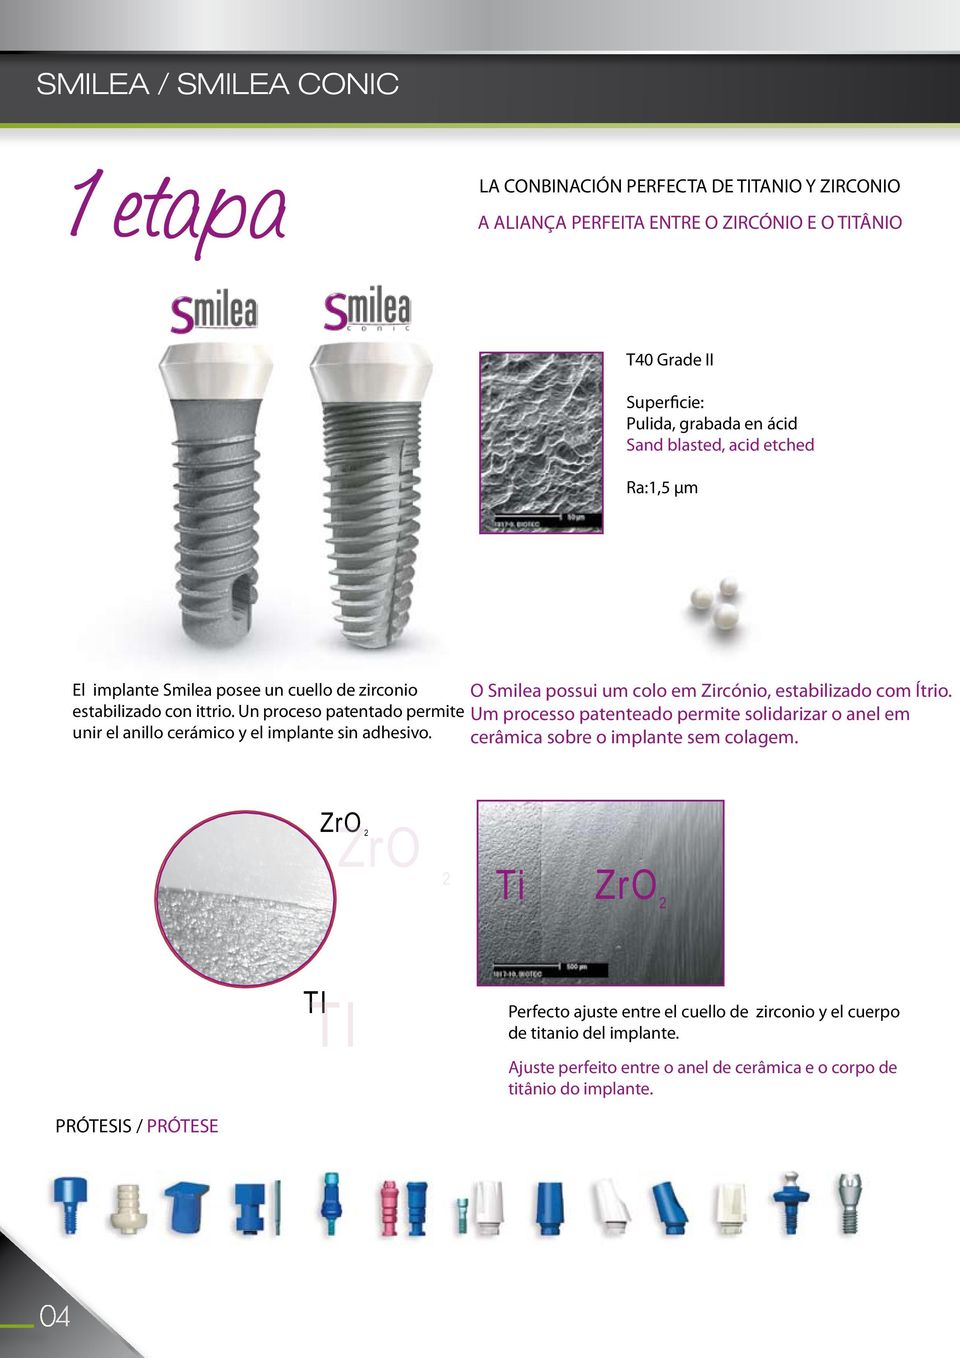 Un proceso patentado permite Um processo patenteado permite solidarizar o anel em unir el anillo cerámico y el implante sin adhesivo. cerâmica sobre o implante sem colagem.